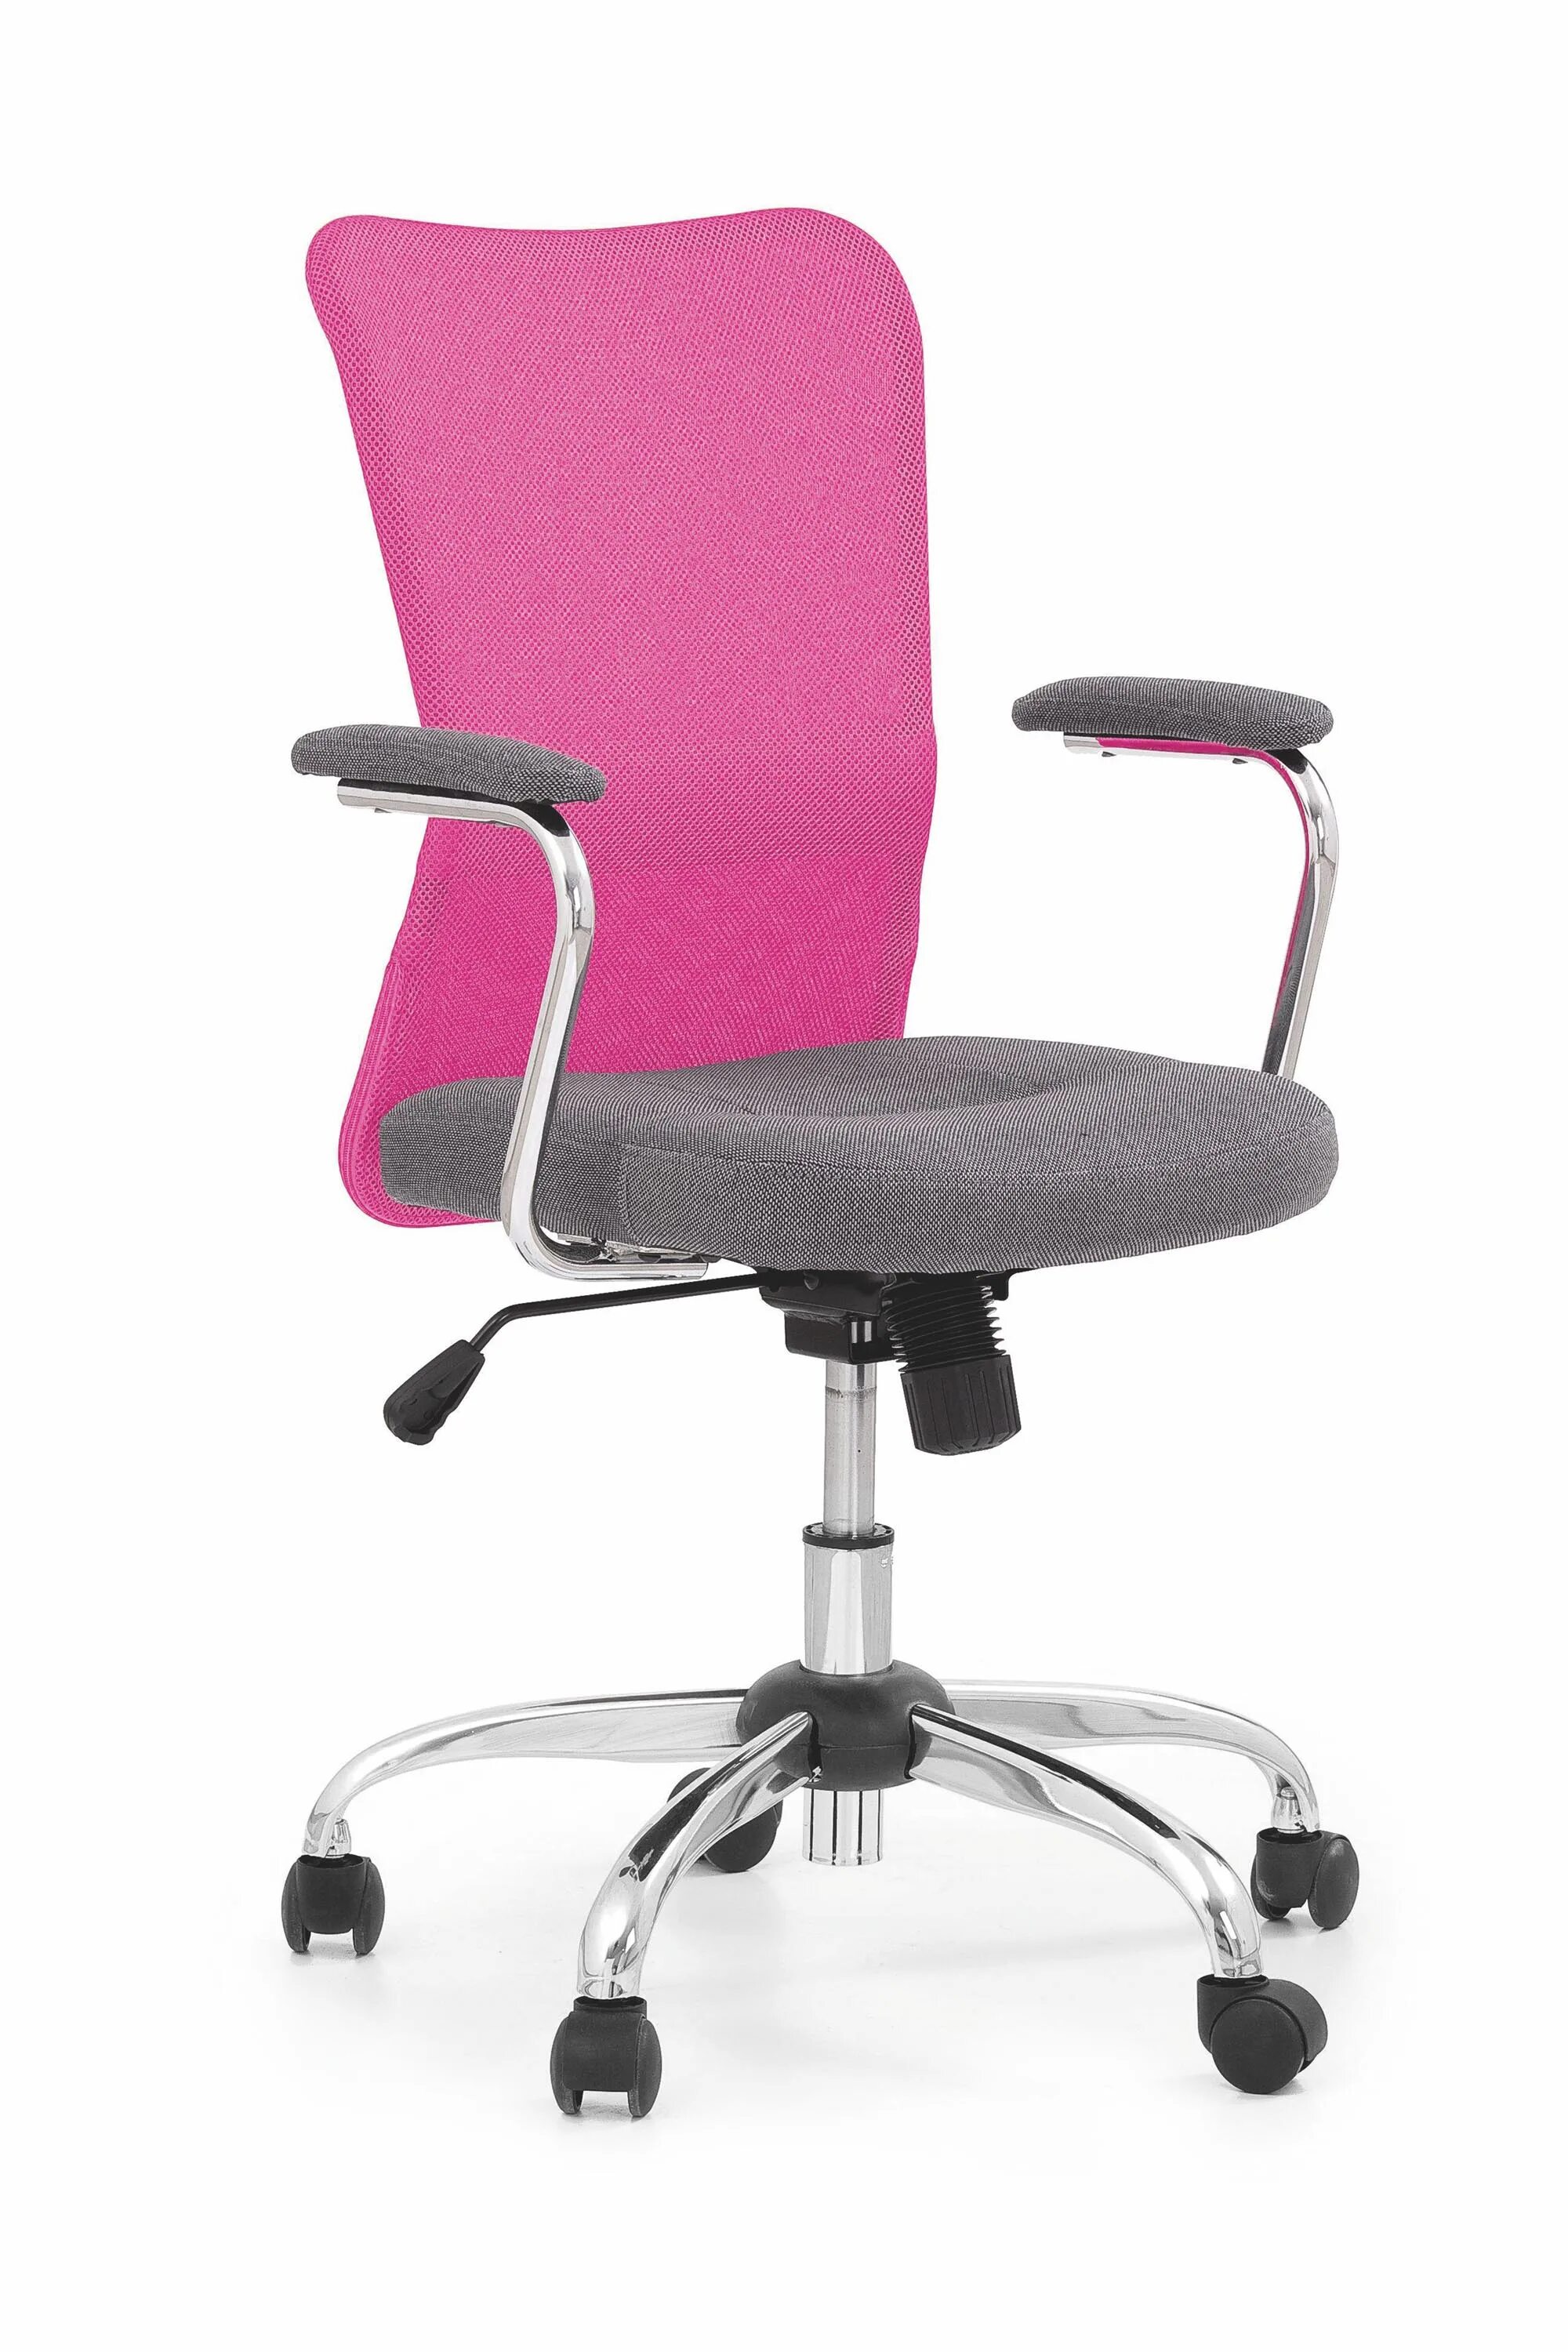 Офисные компьютерные кресла купить. Кресло офисное Седия Rosio-2. Кресло компьютерное Halmar fresco (розовый. Halmar кресло на колесиках. Кресло компьютерное BM 526.